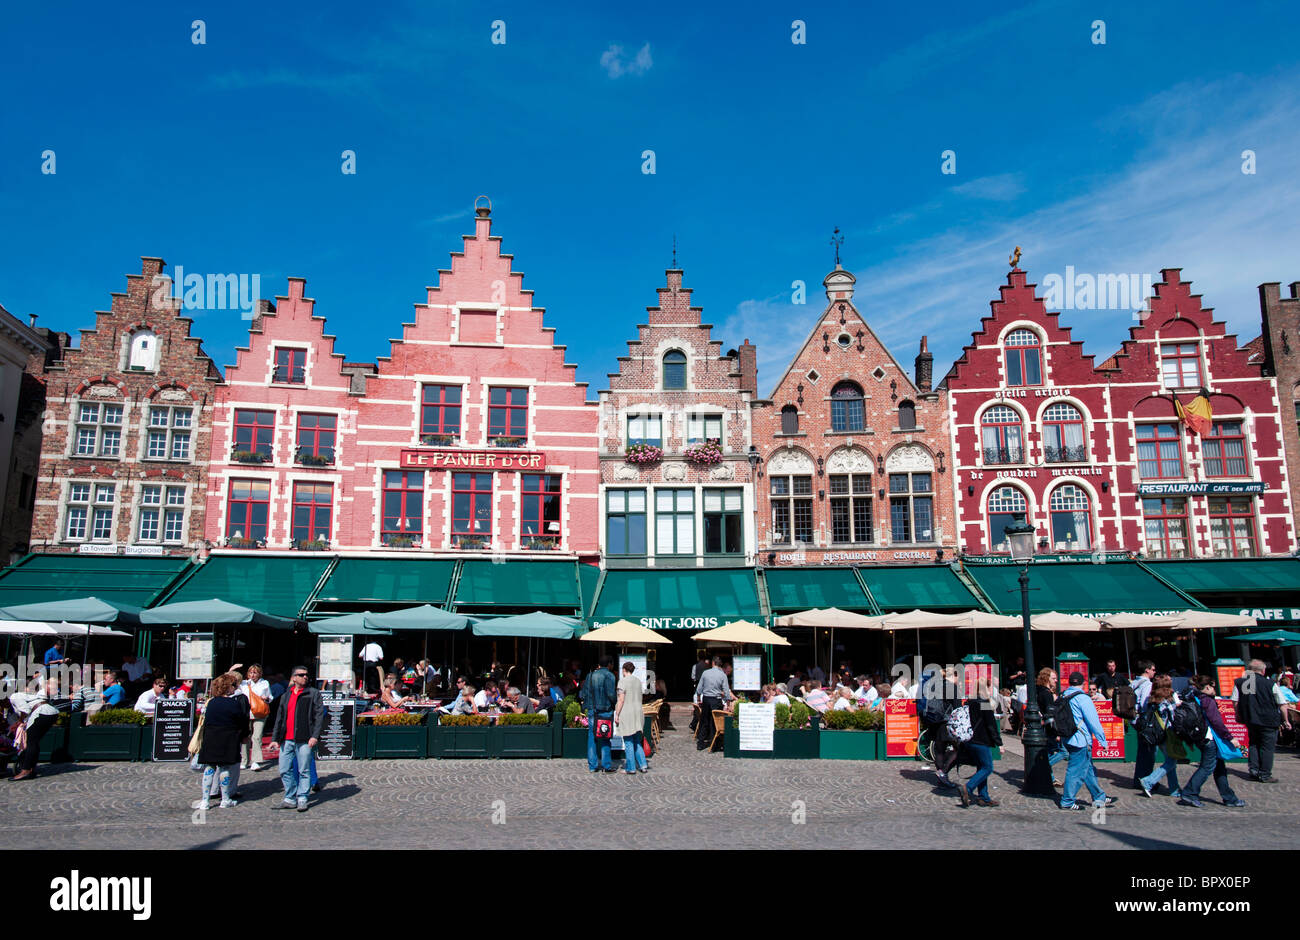 Fila de ornamentados edificios históricos y restaurantes en la plaza del mercado de Brujas en Bélgica Foto de stock